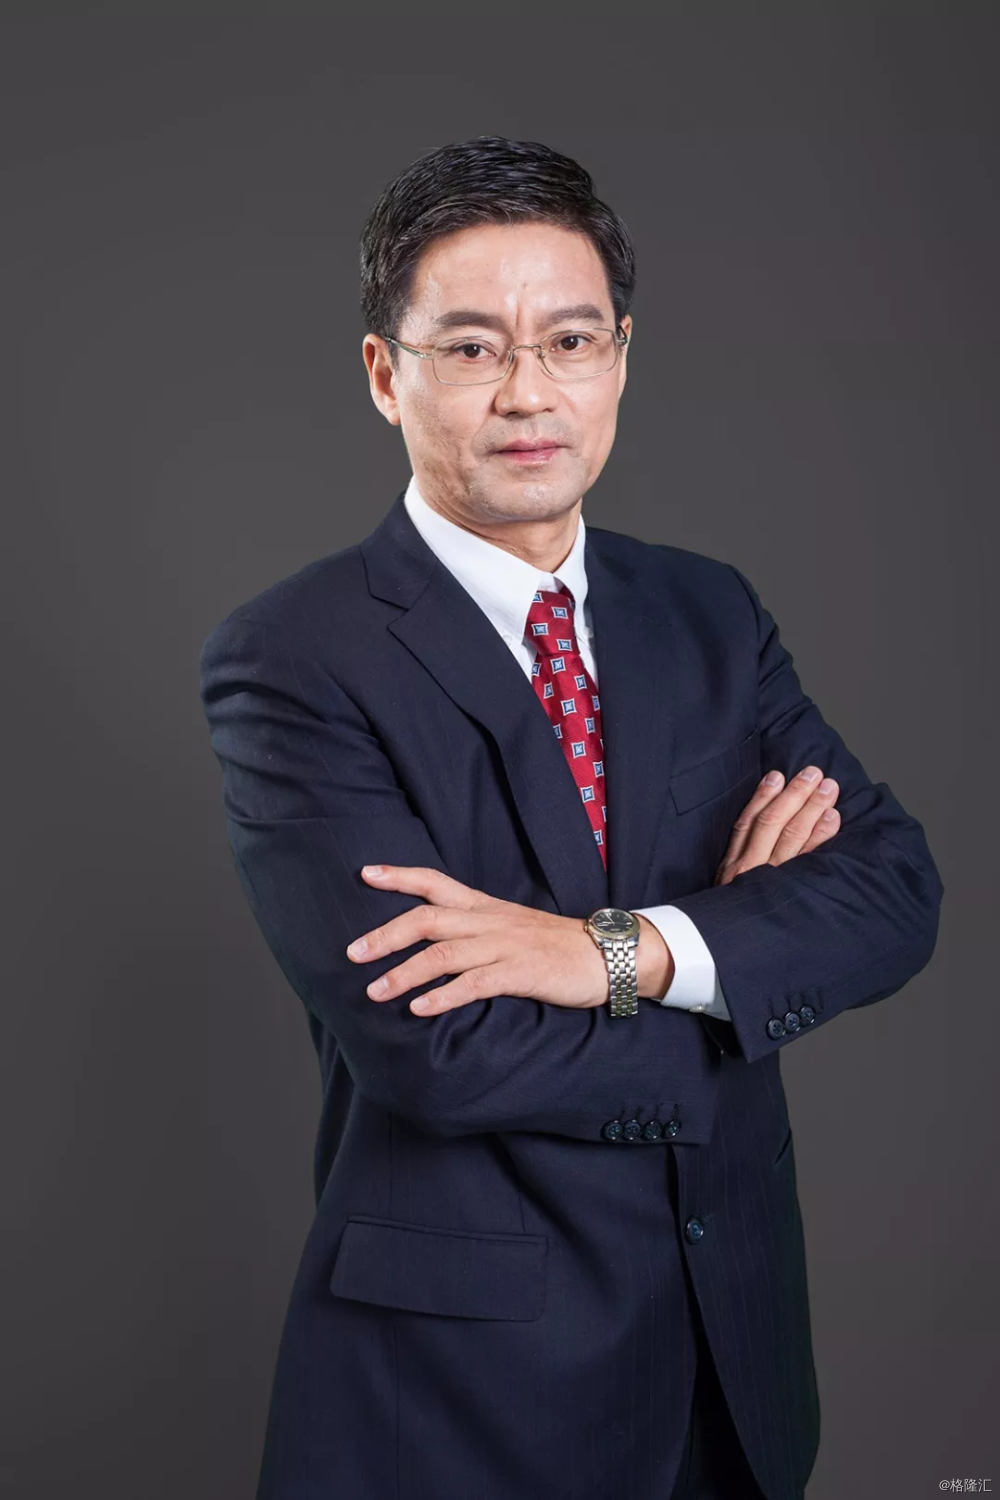 金斯瑞生物科技创始人兼CEO章方良博士